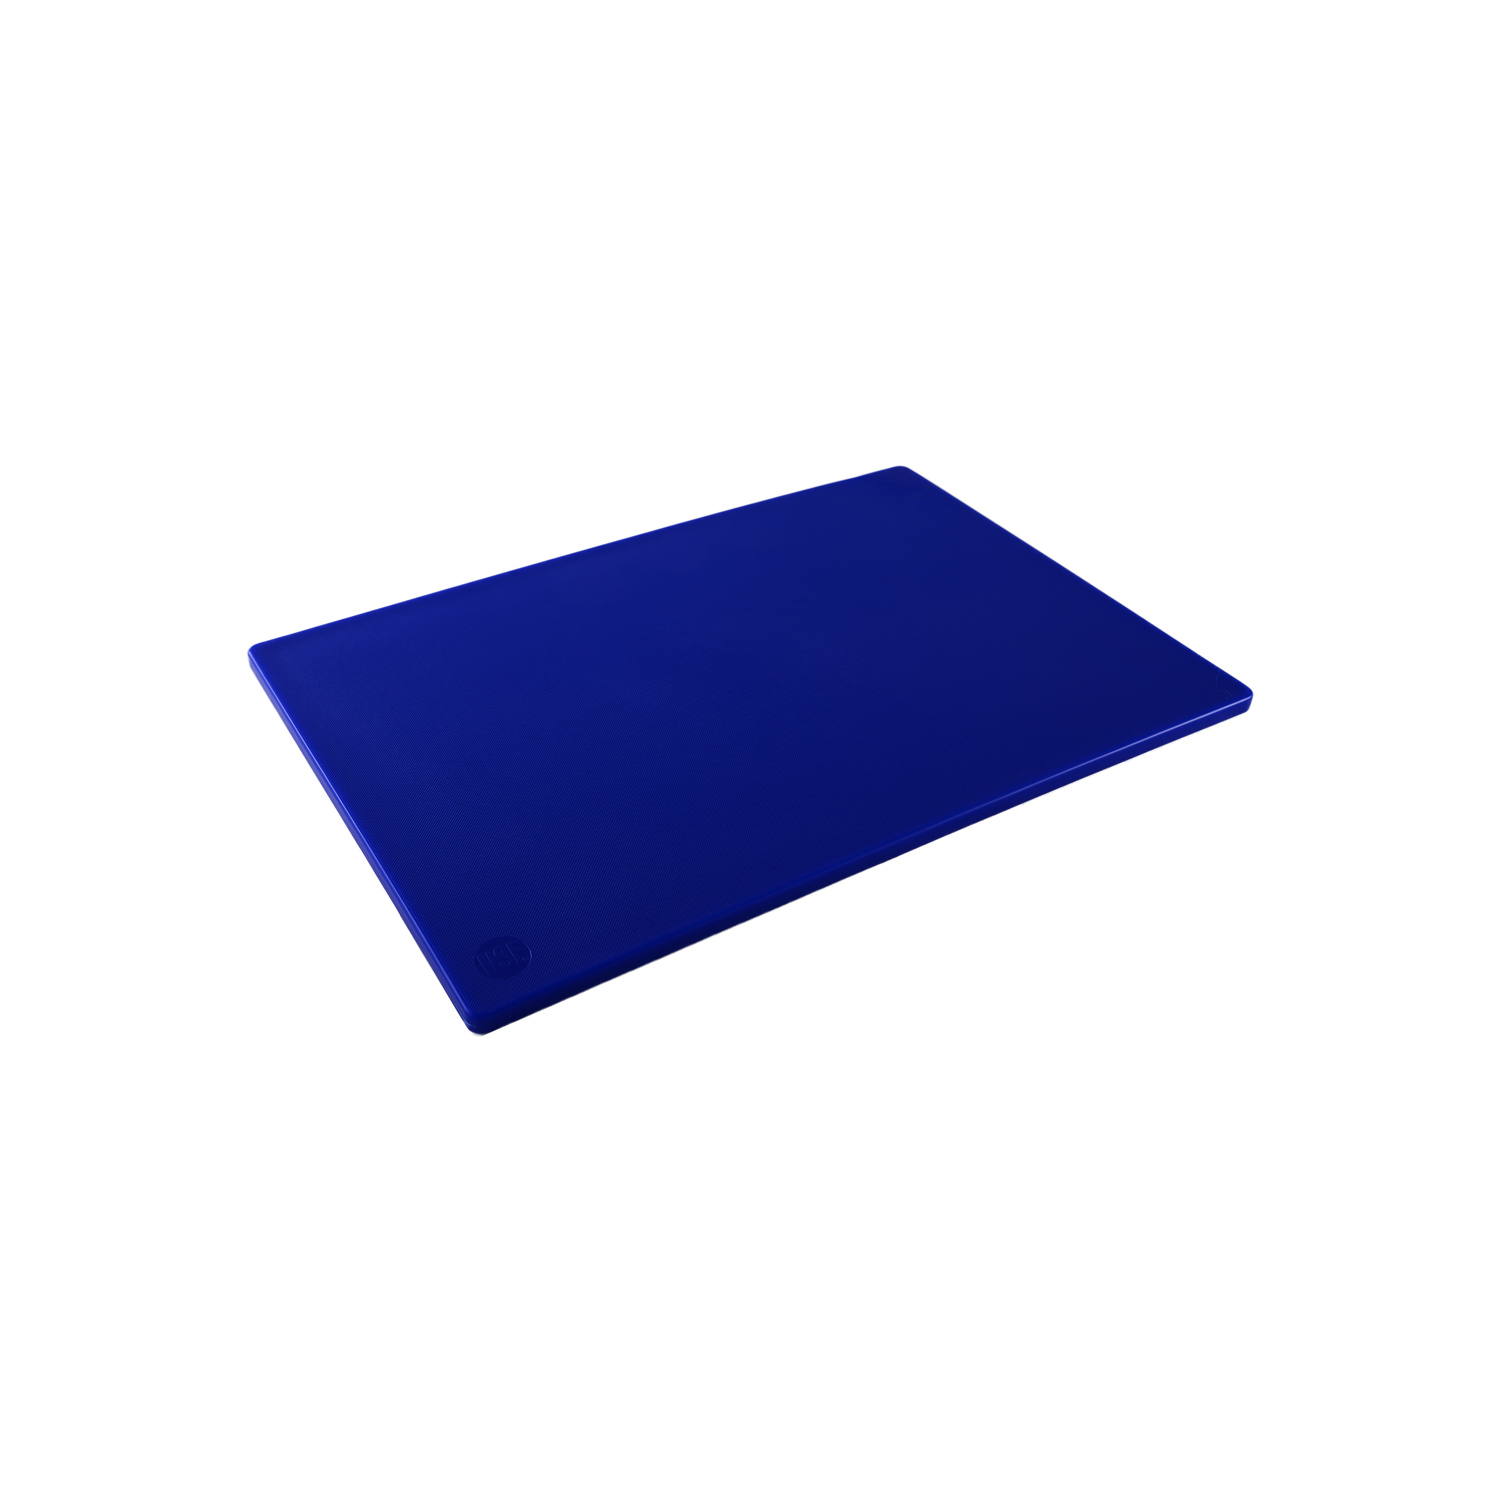 CAC China CBPH-1824BL Blue Plastic Cutting Board 24" x 18"